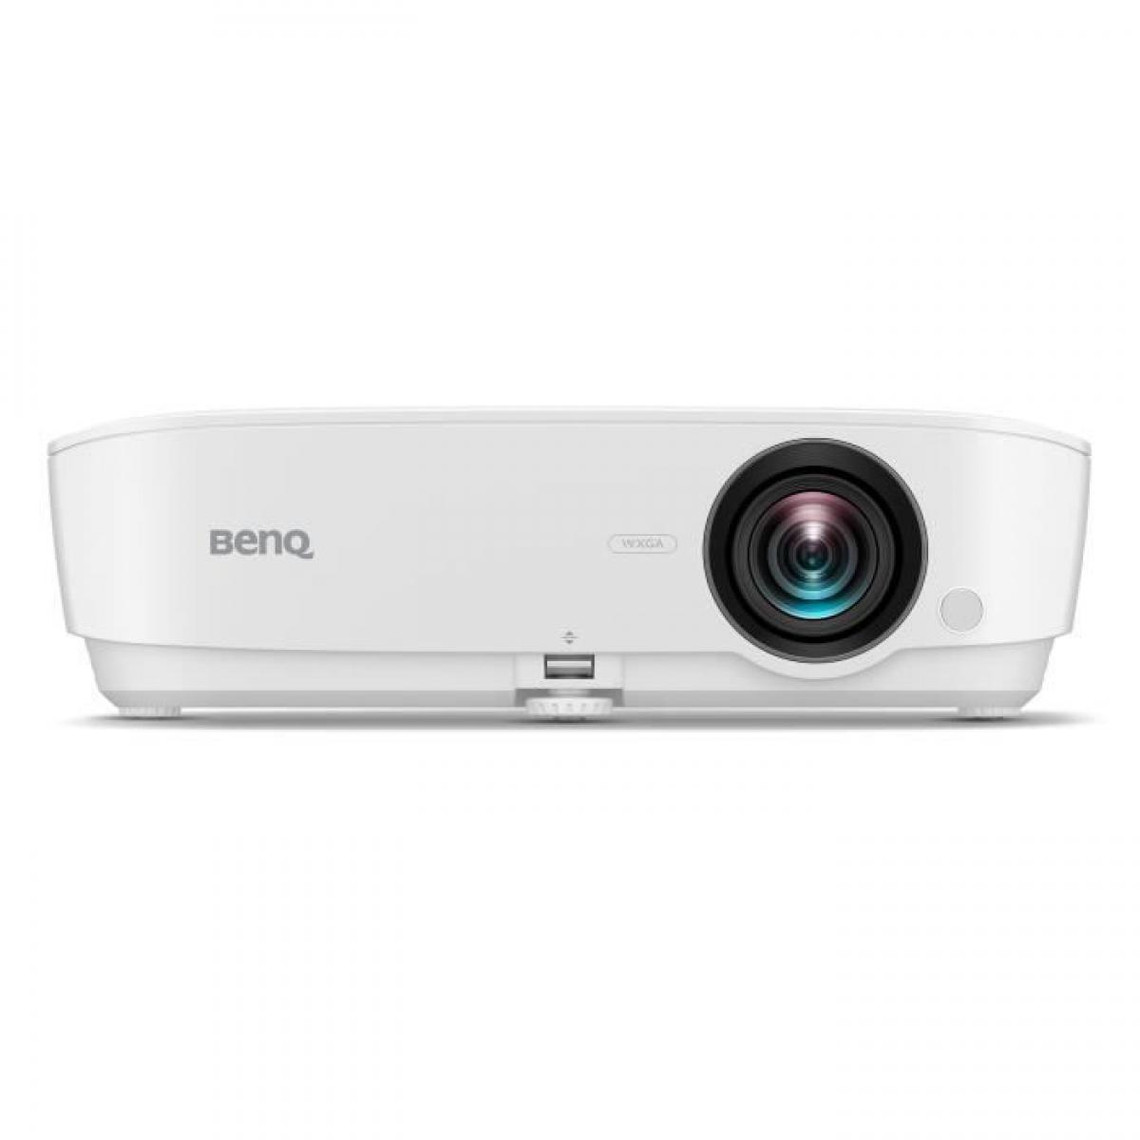 Vidéoprojecteurs polyvalent Benq BENQ MW536 Vidéoprojecteur DLP - Résolution WXGA 1280 x 800 pixels - 4000 lumens ANSI - 2xHDMI - Enceinte 2W - Blanc